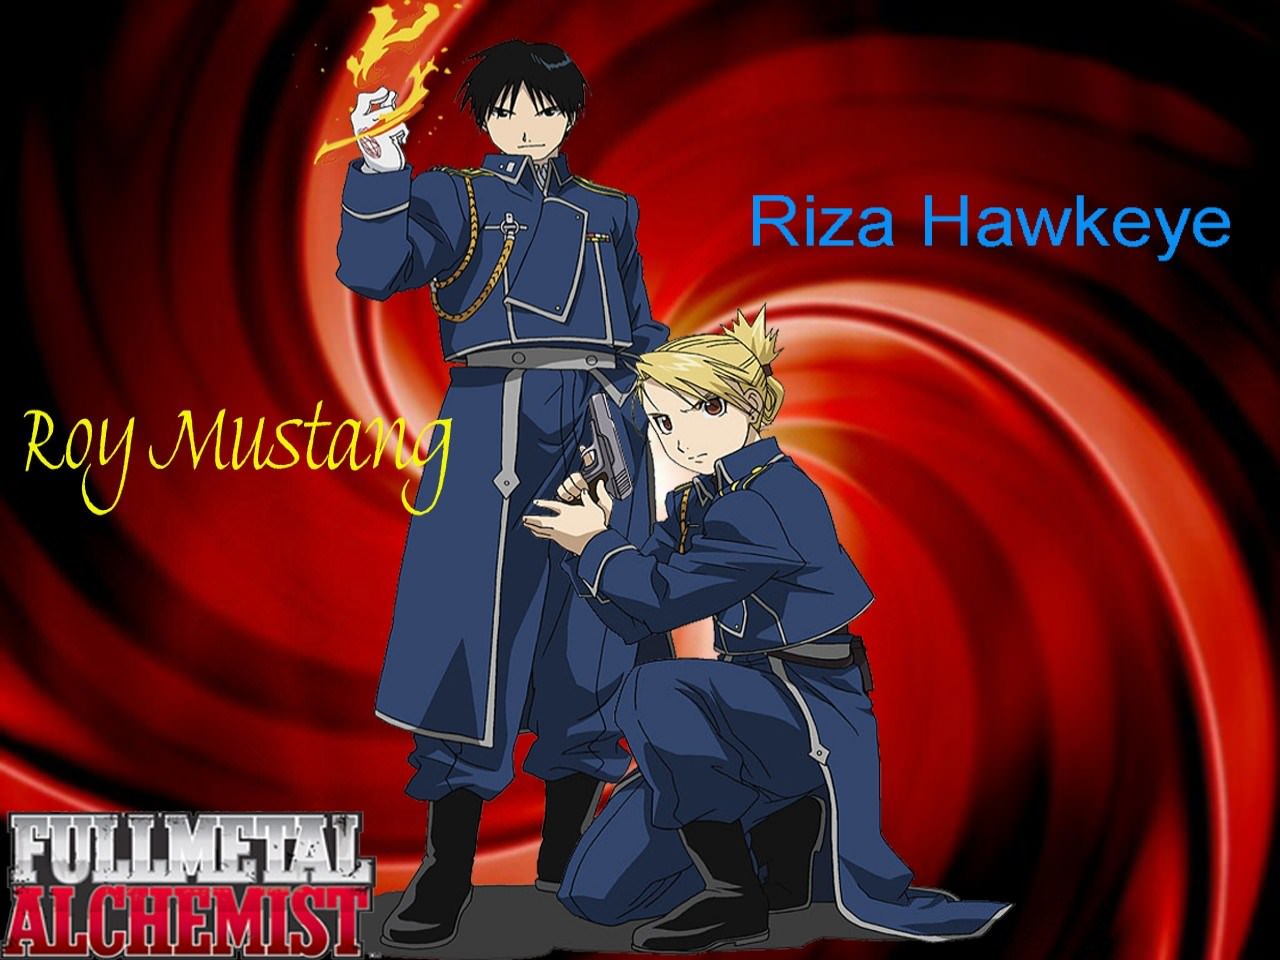 Fullmetal Alchemist Roy Mustang & Riza Hawkeye